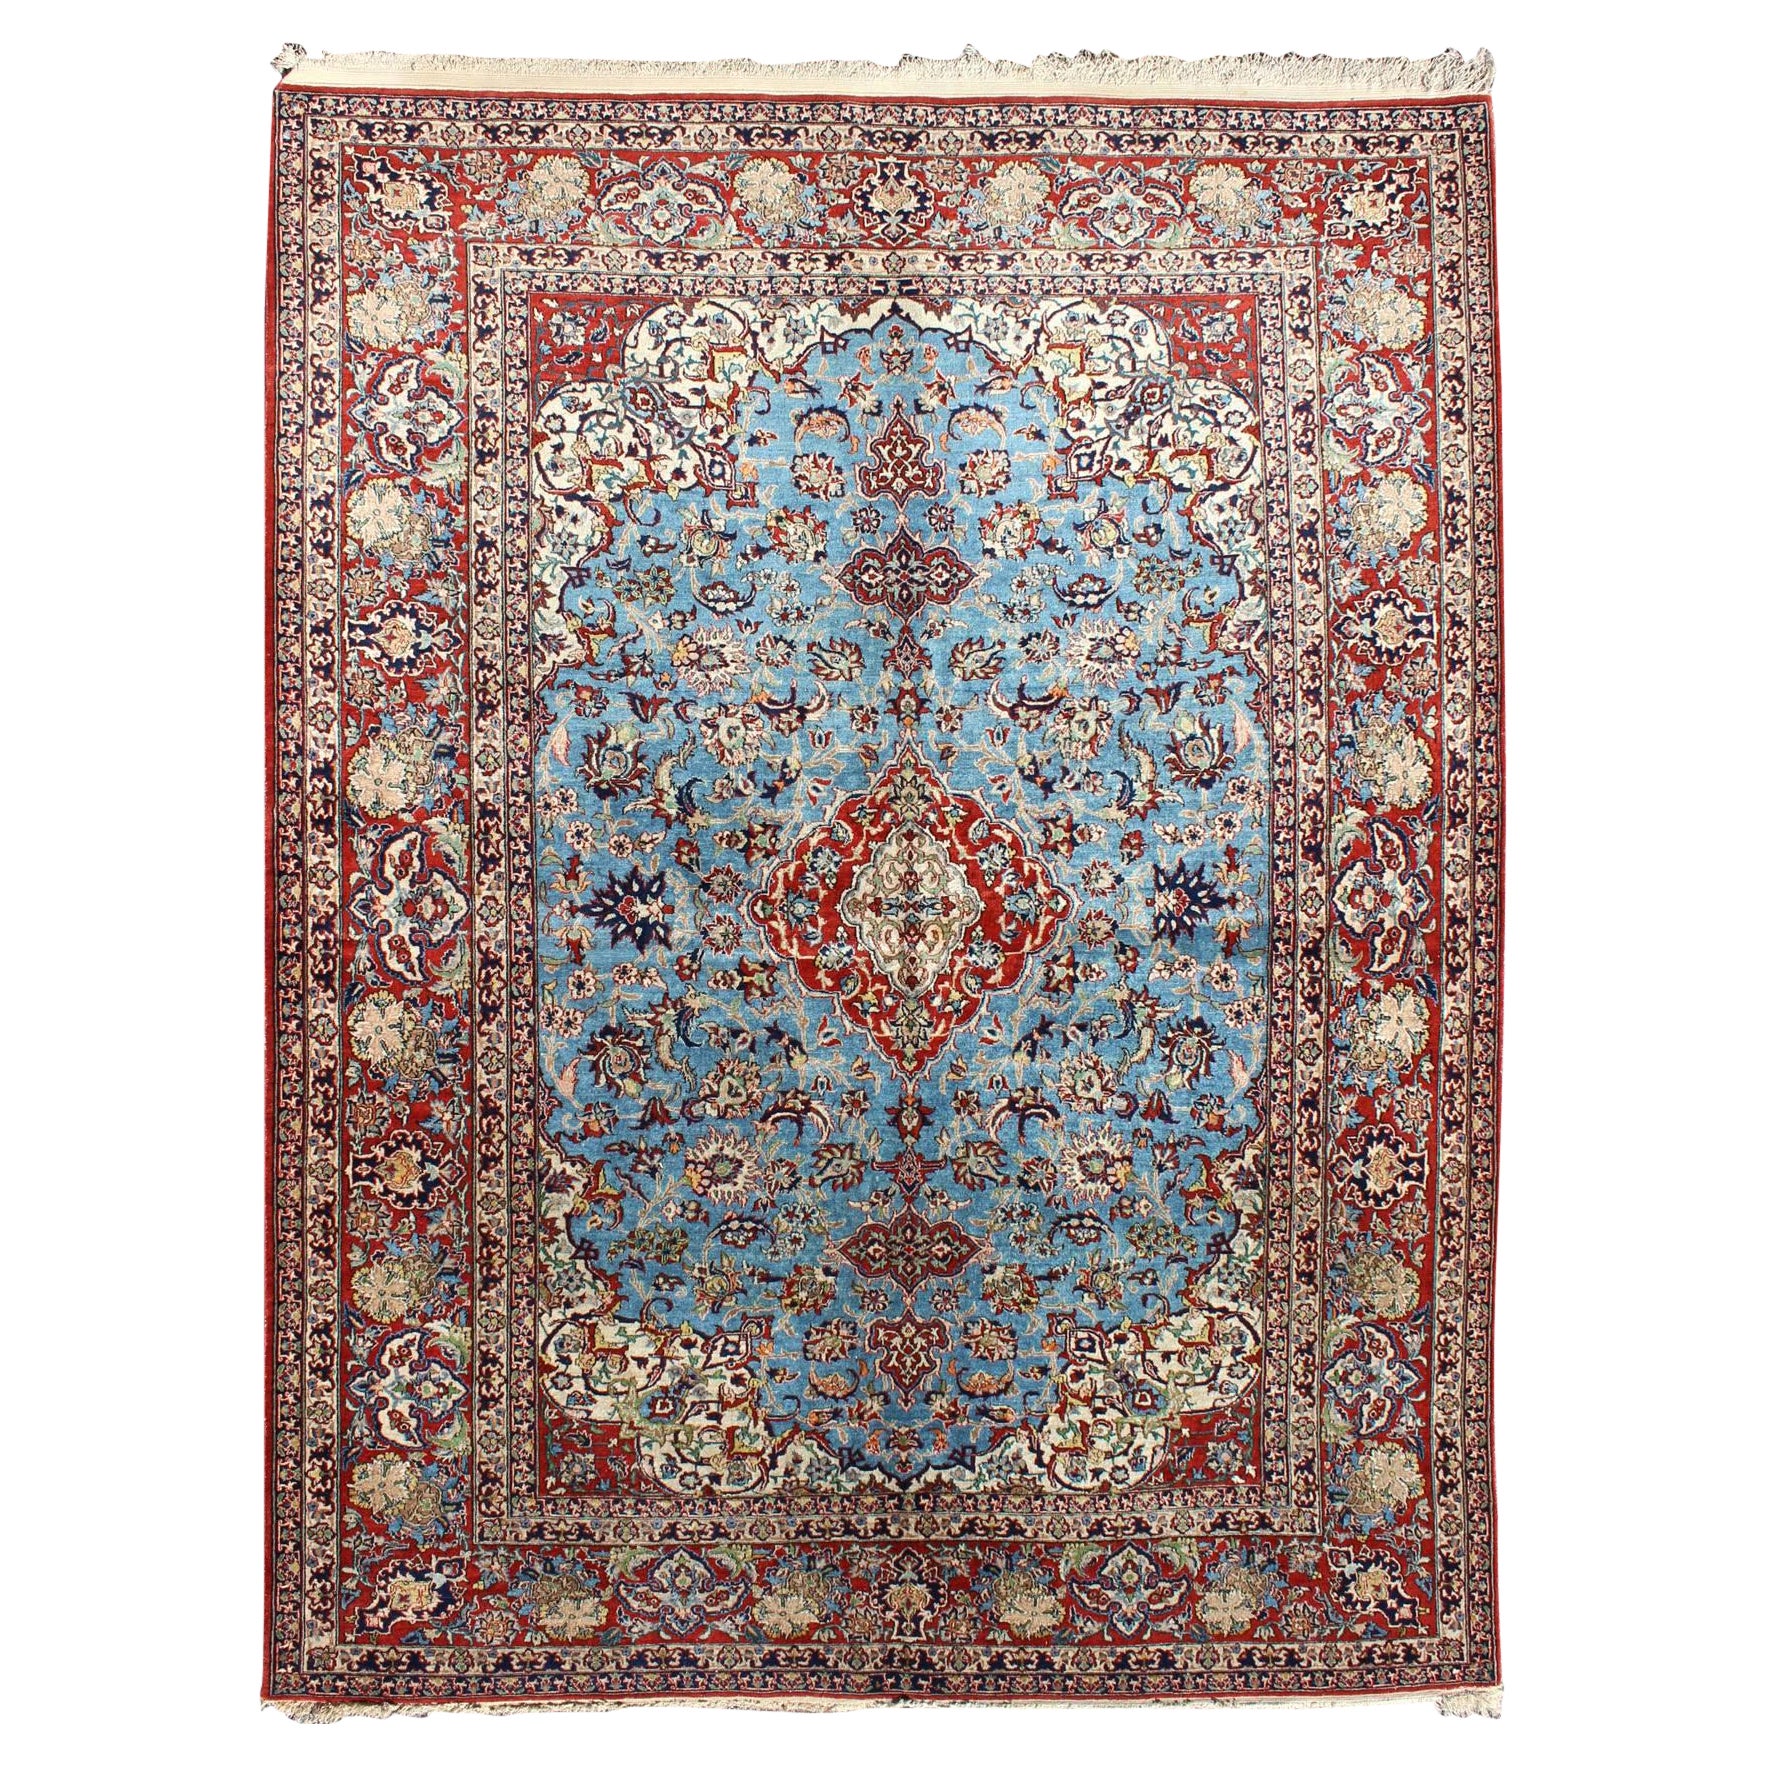 Très beau tapis persan d'Ispahan avec des fleurs complexes en bleu et rouge